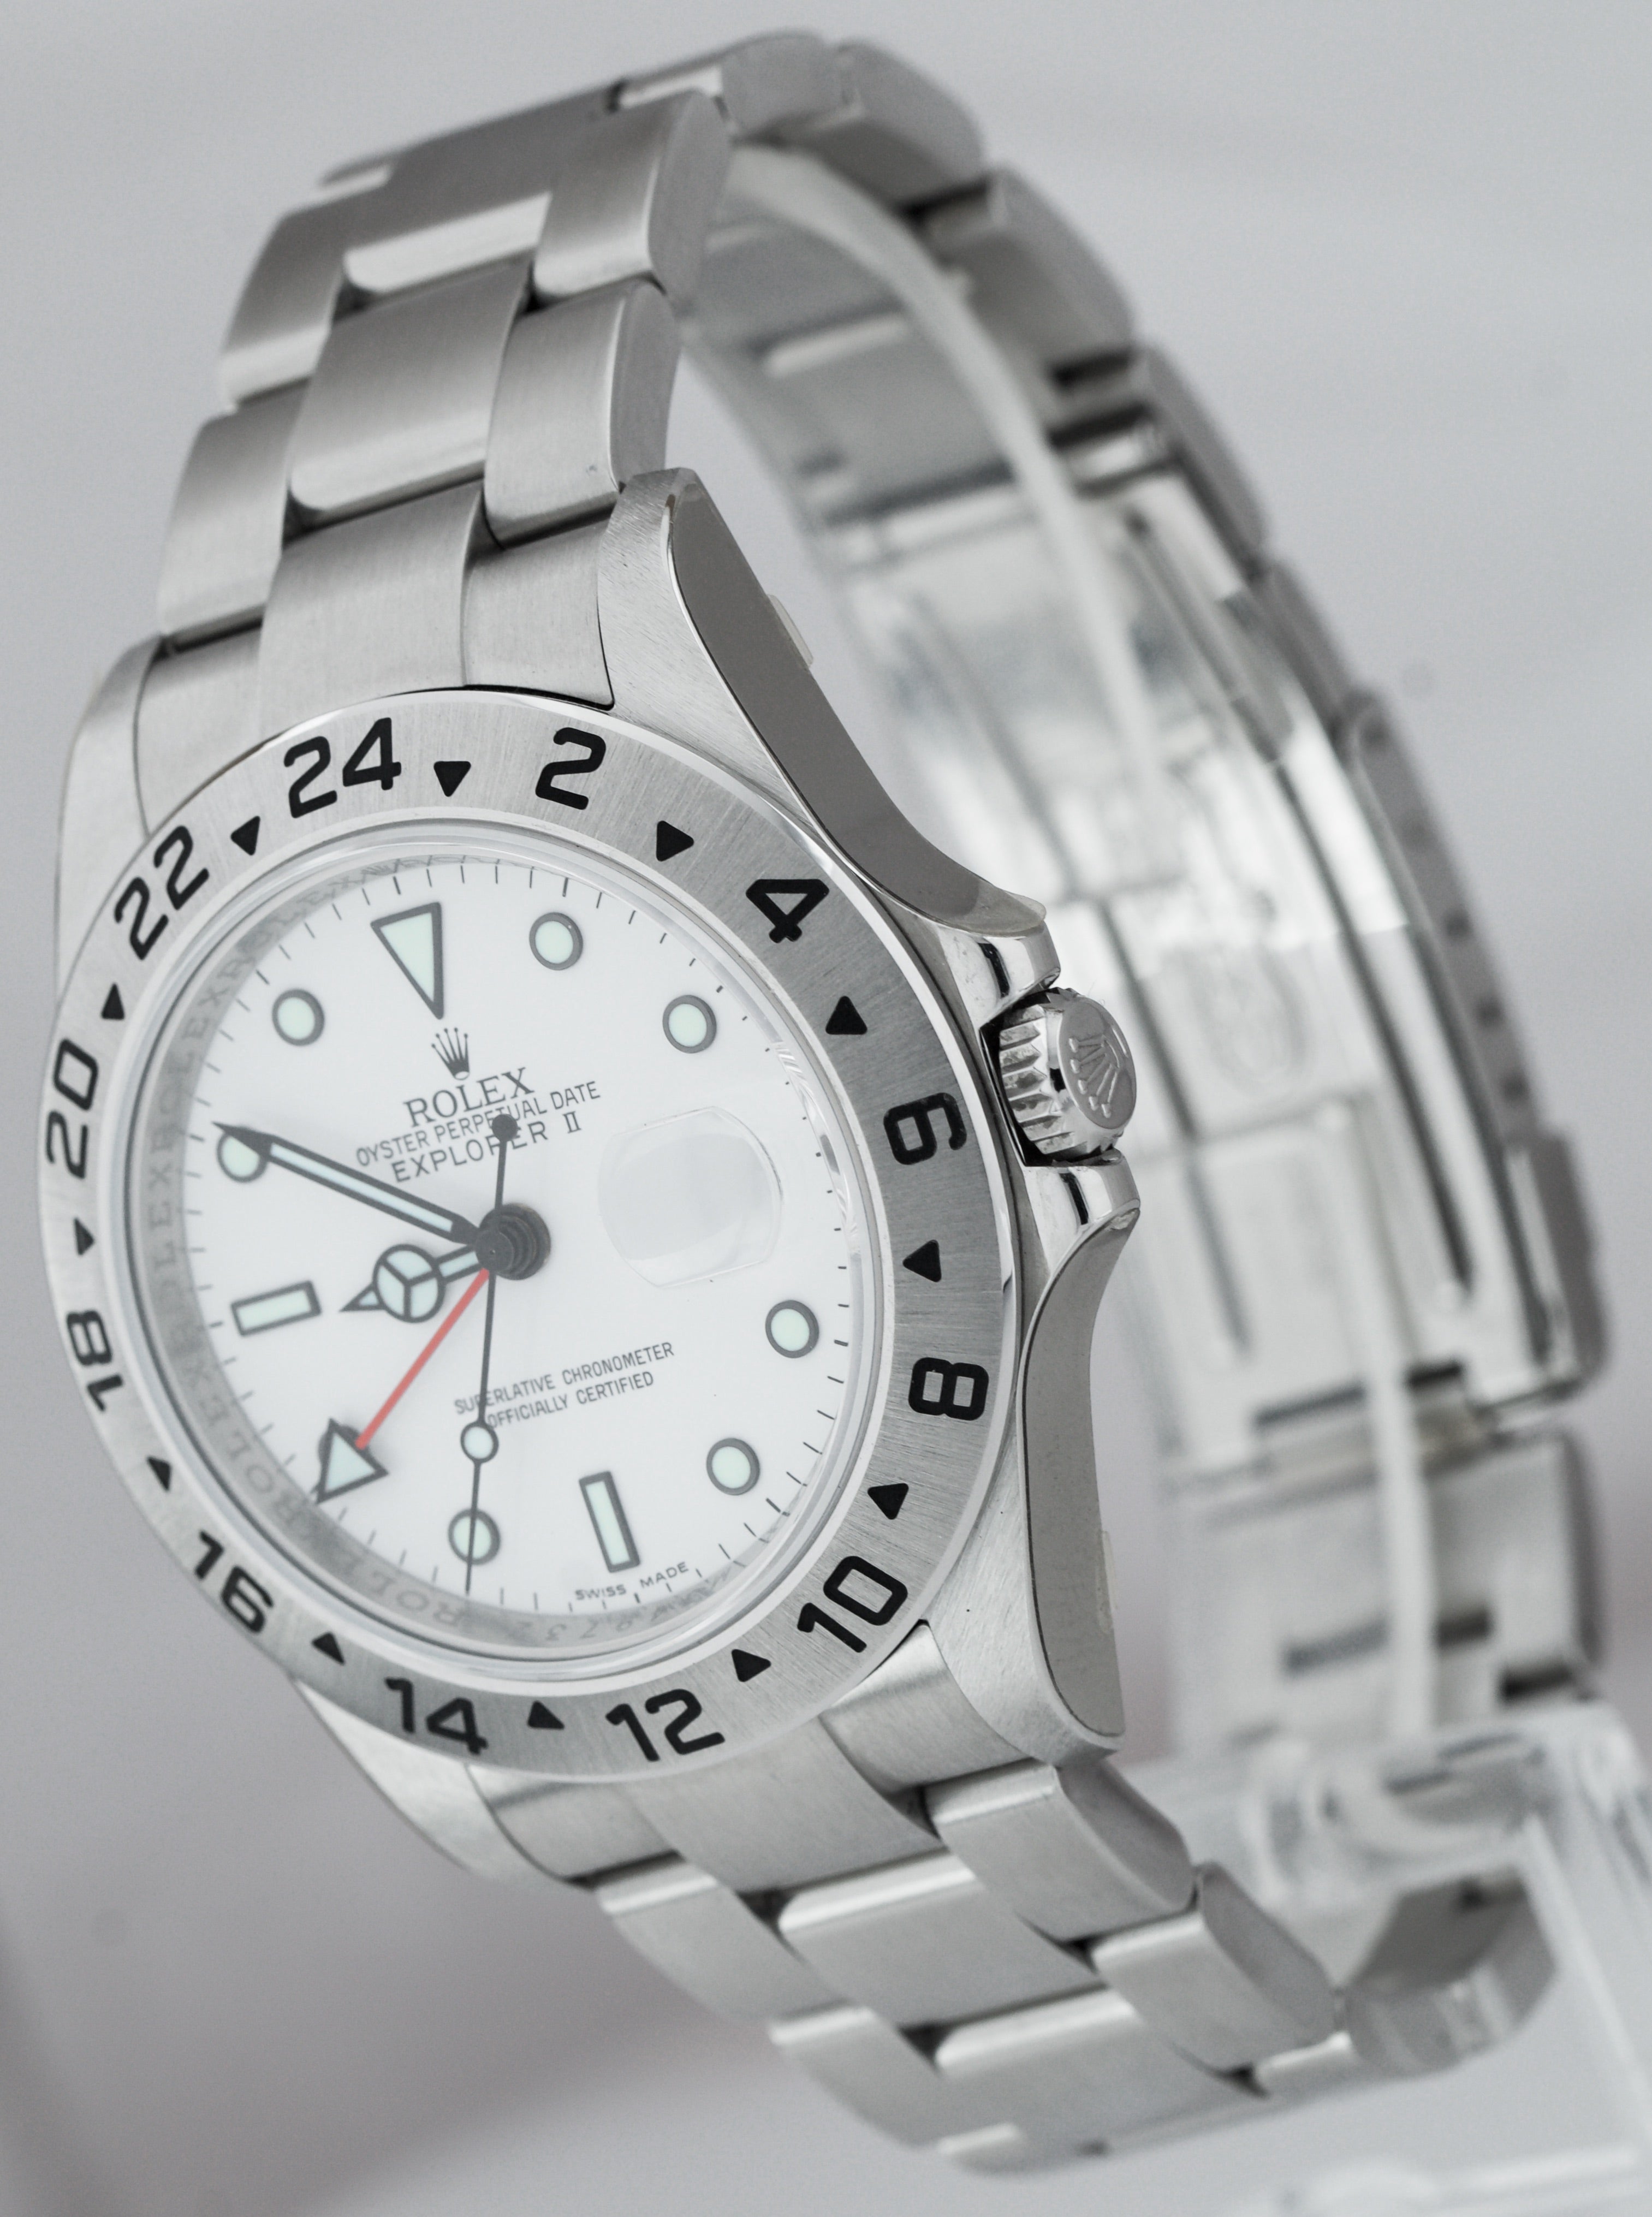 BRAND NEW NOS STICKERED Rolex Explorer II REHAUT 3186 White 40mm Watch 16570 T